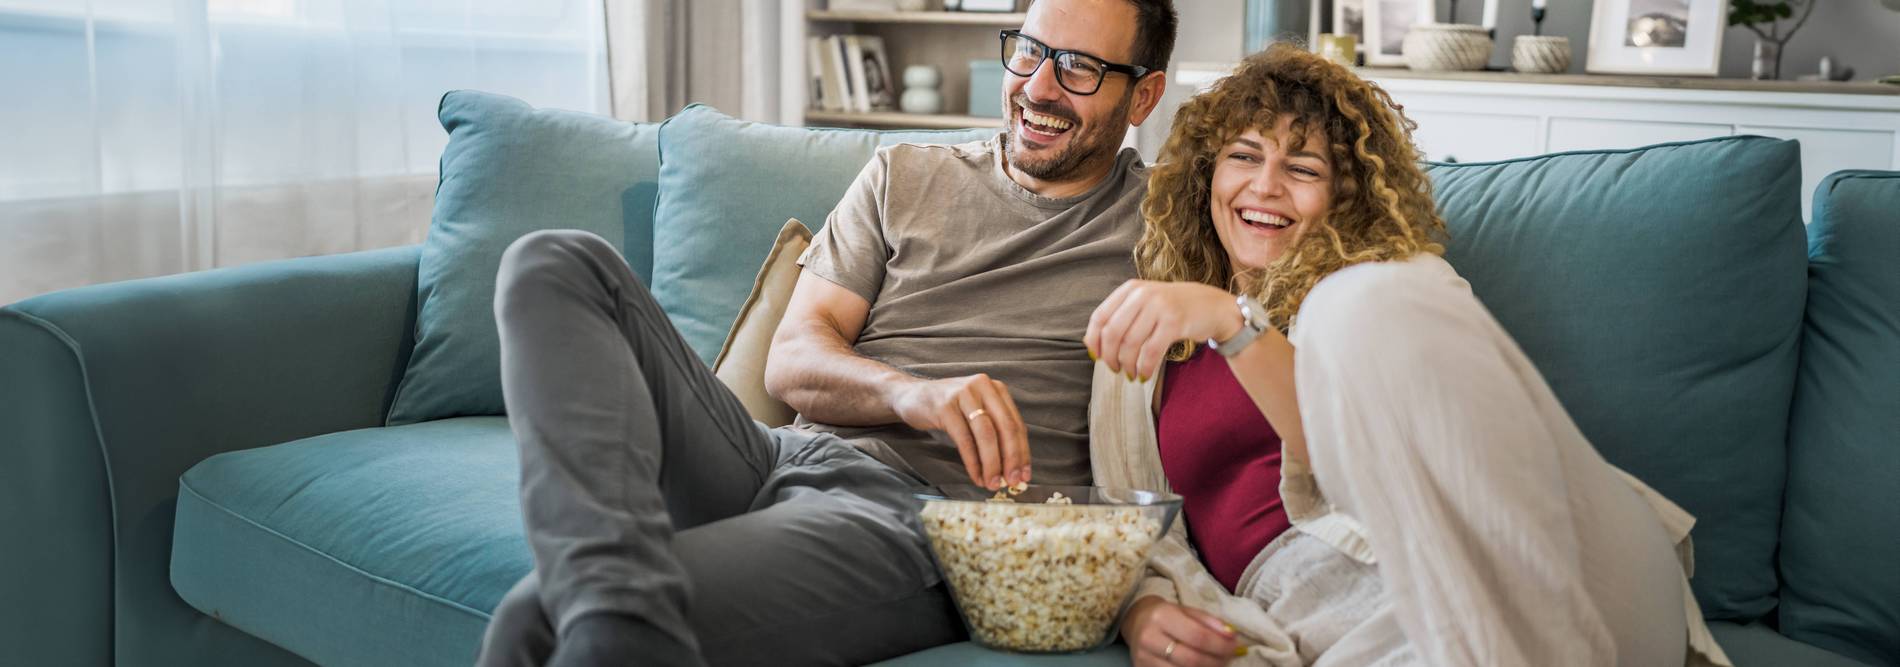 Paar auf dem Sofa mit Popcorn am fernsehen